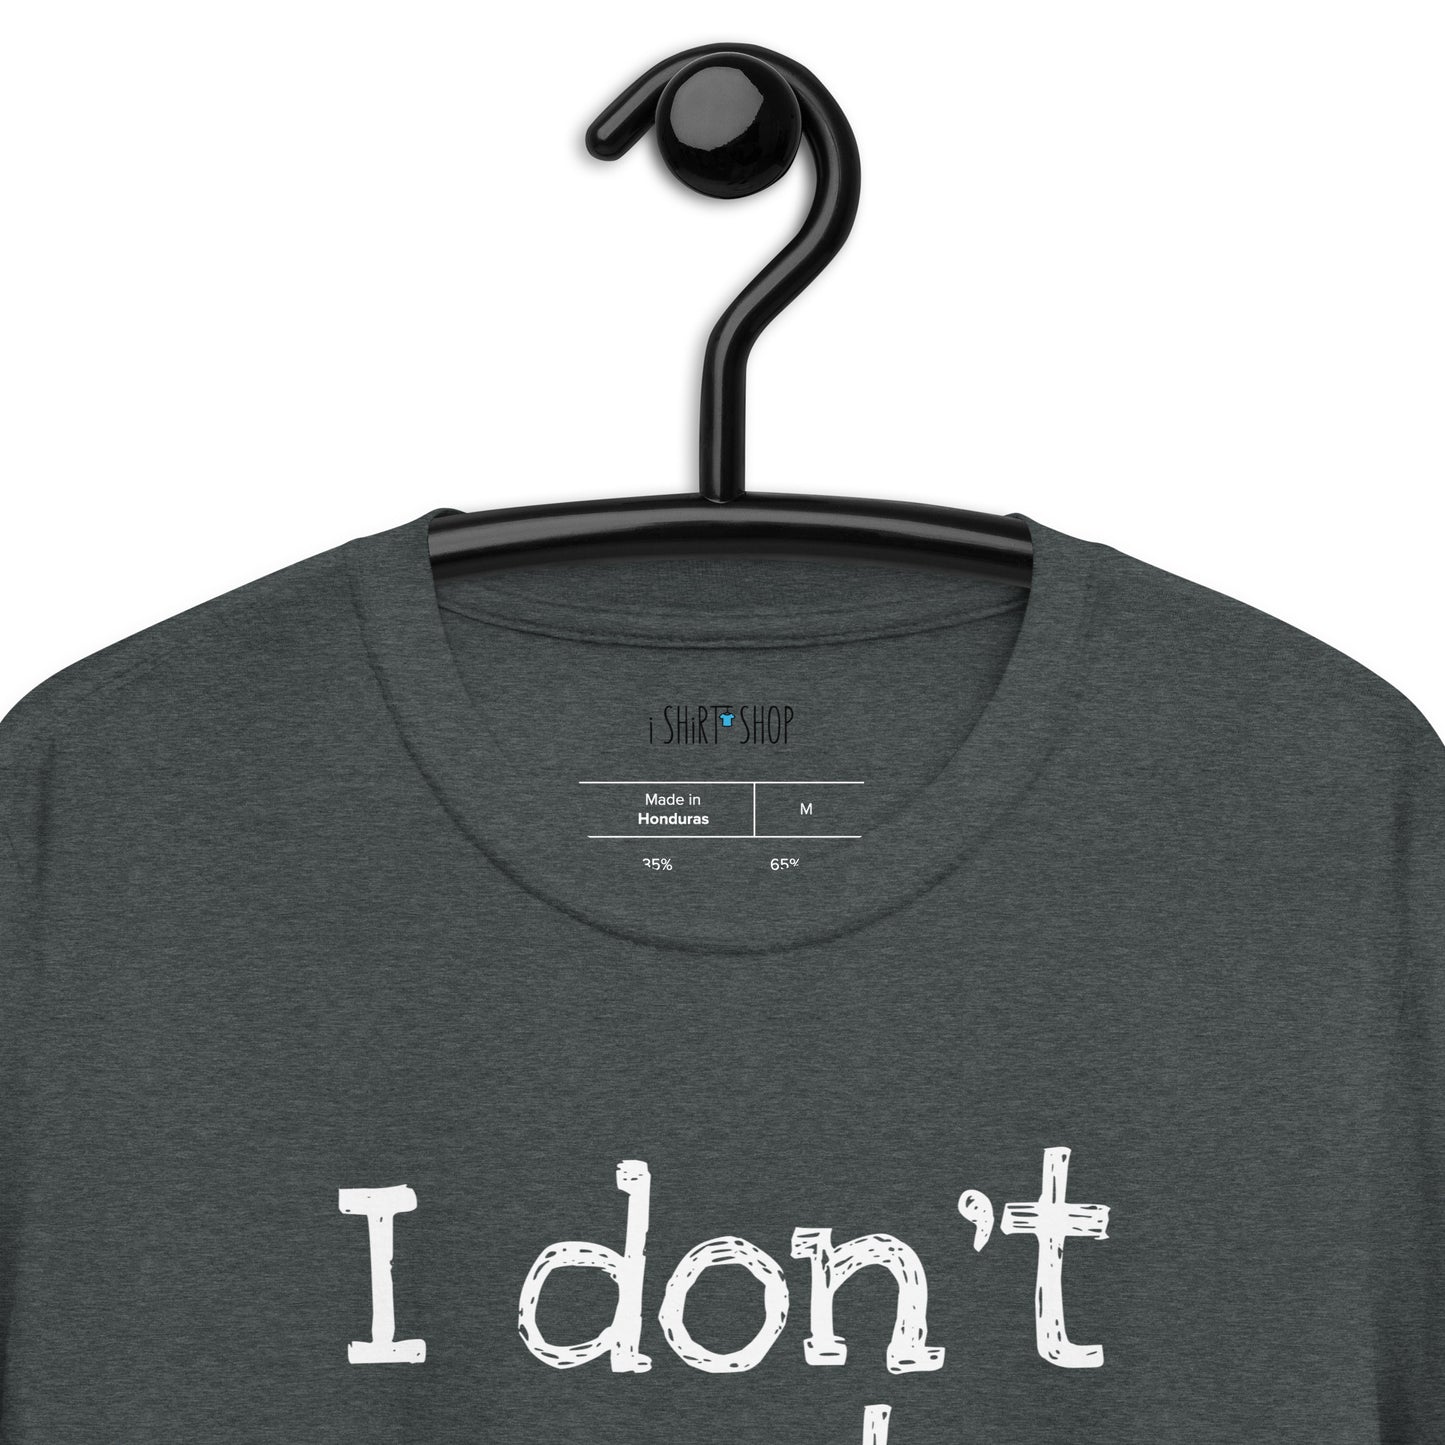 I Don't Get Older Short-Sleeve Unisex T-Shirt